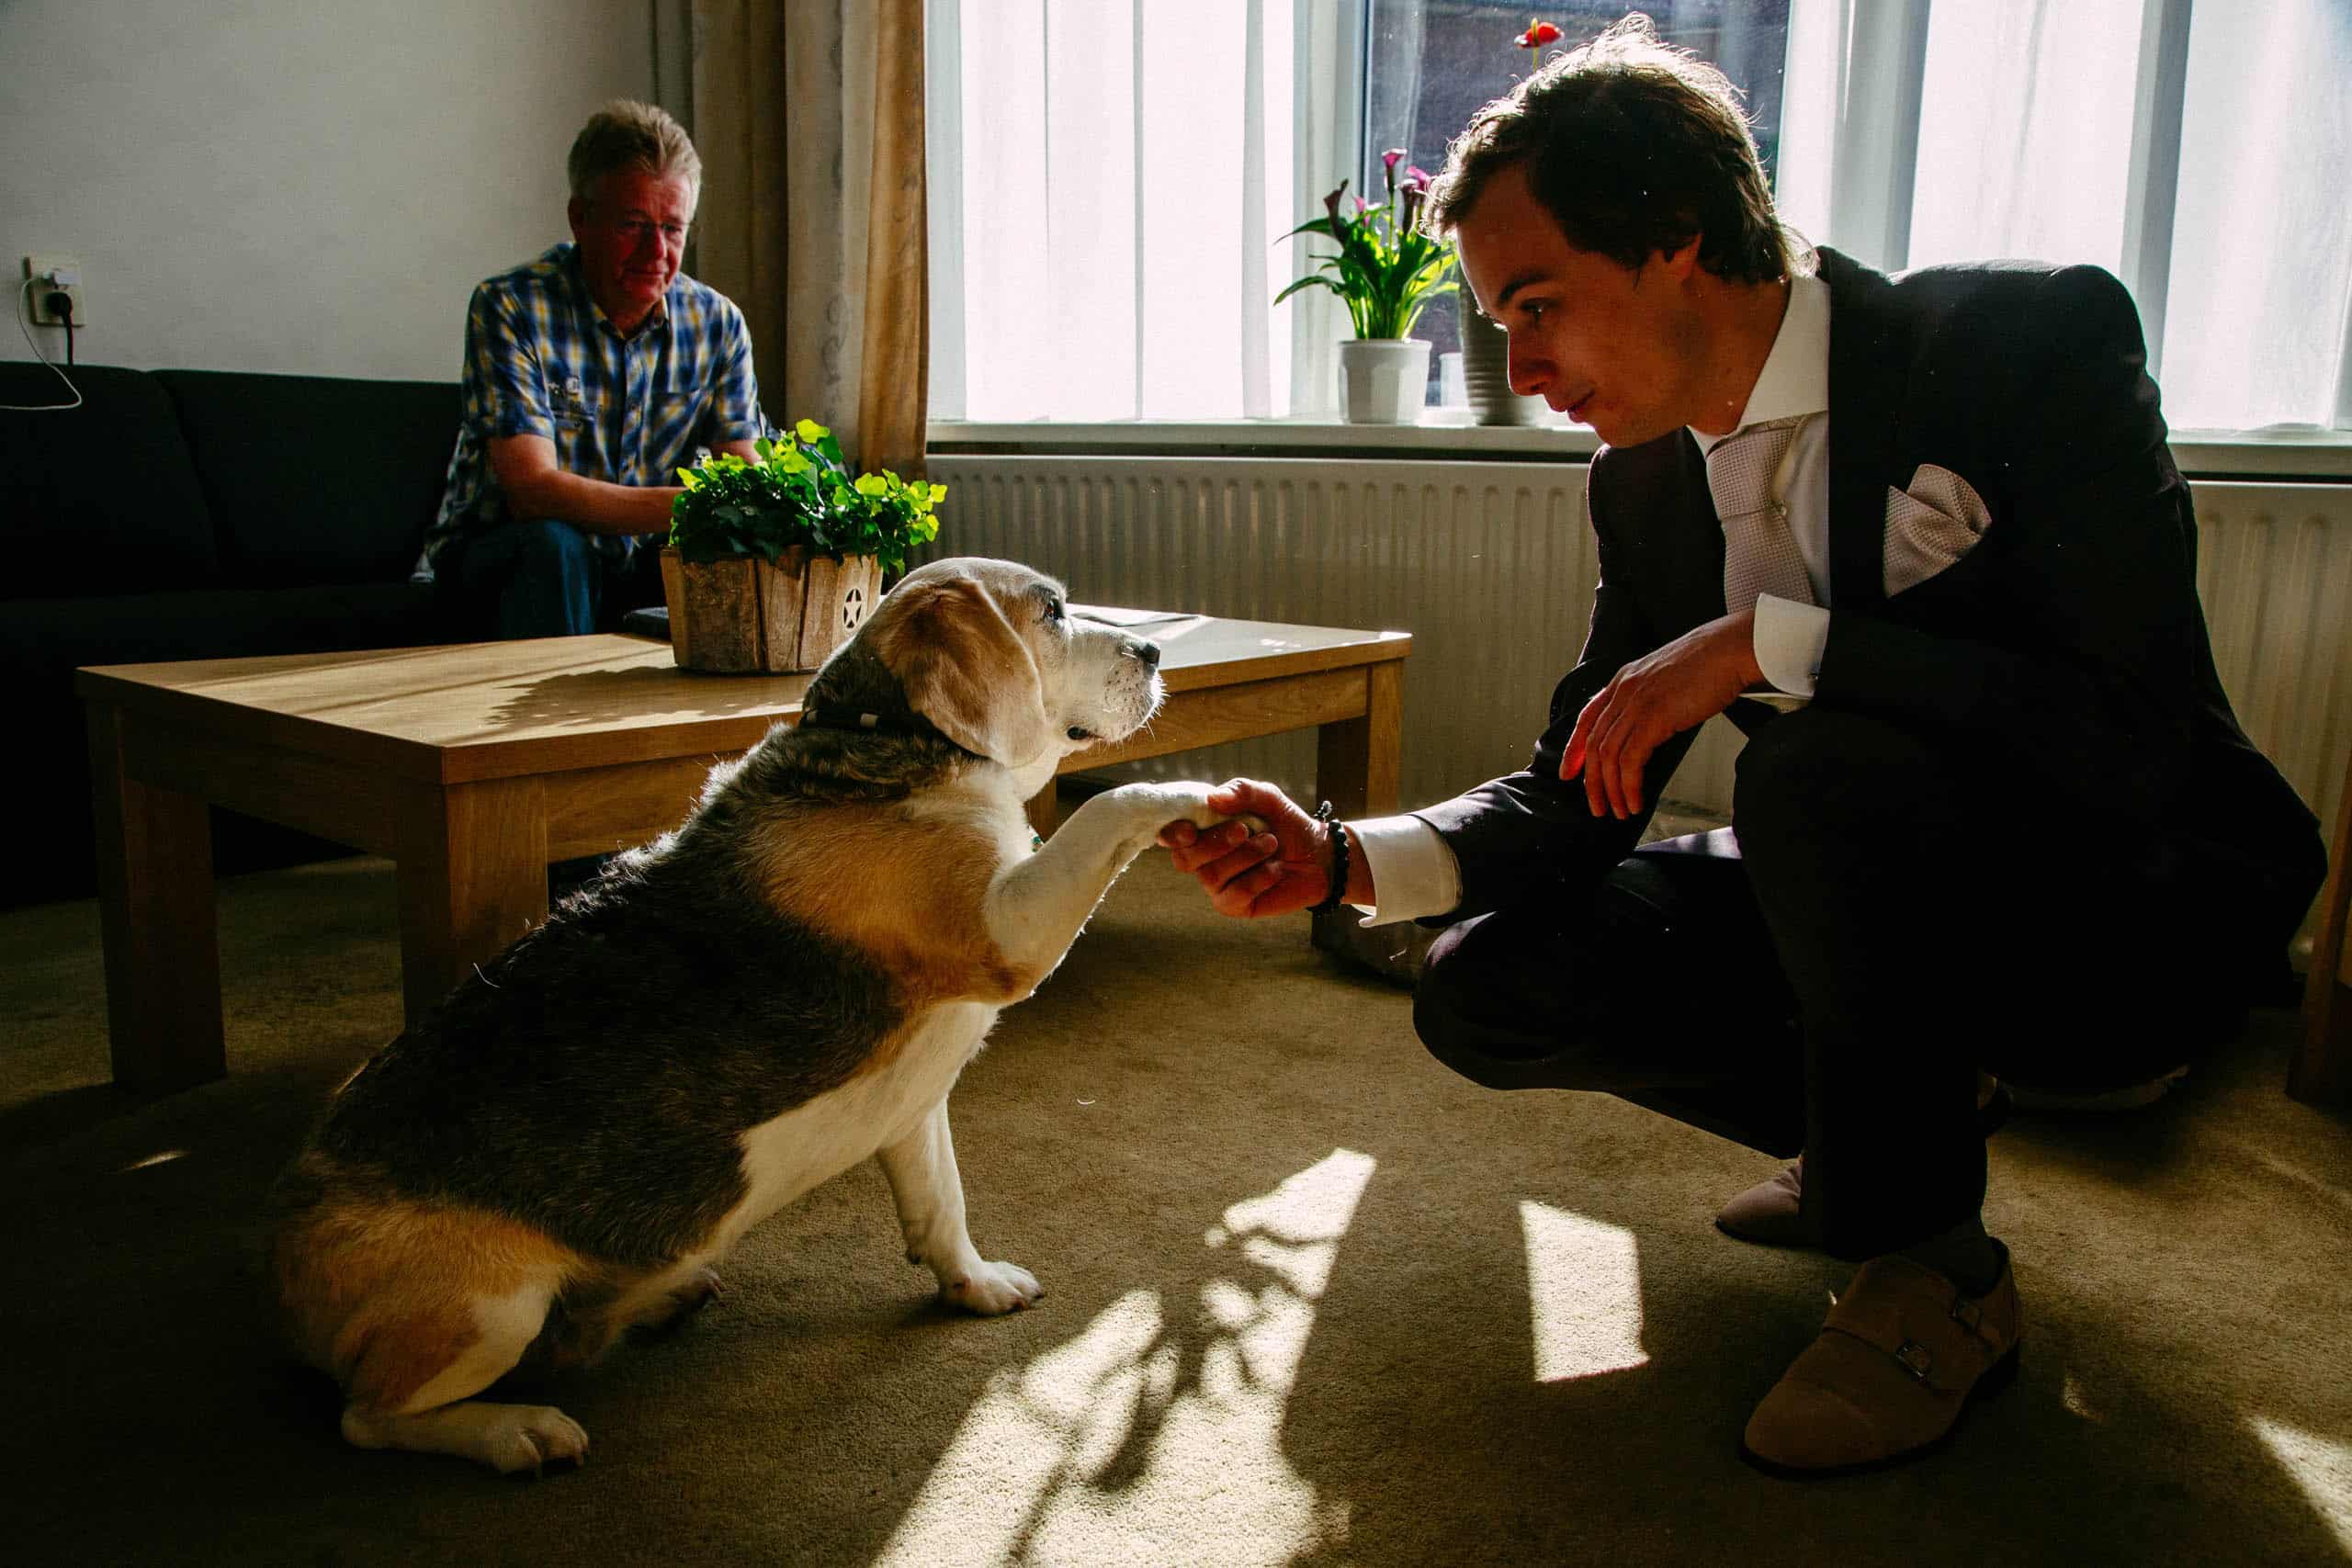 Een man aait een hond in een woonkamer vol warmte en vreugde.